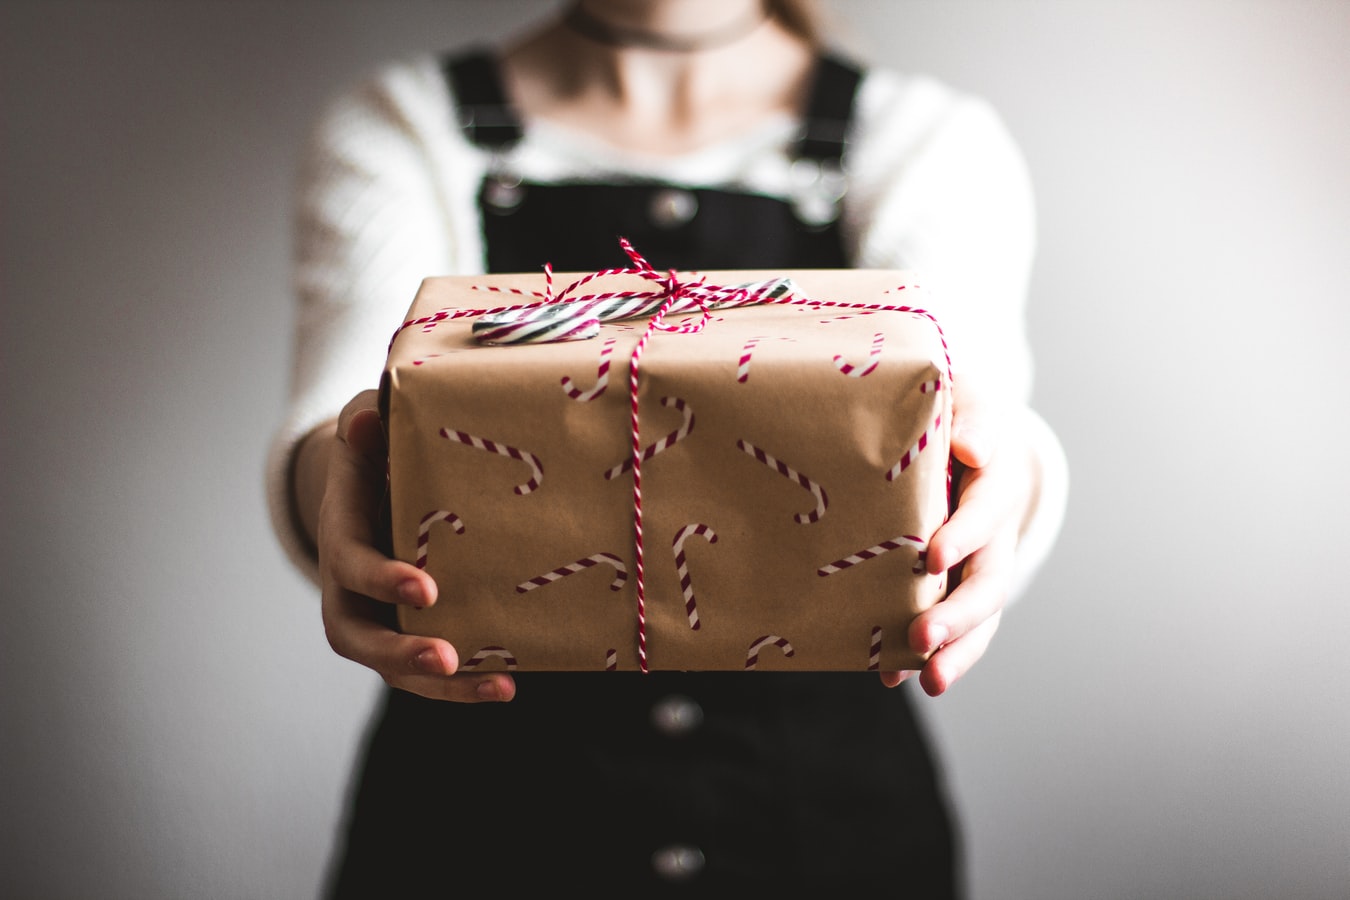 Toneelschrijver Voorkeur Gezond eten Cadeautjes geven is leuk! Maar waarom? Dit is de psychologie erachter